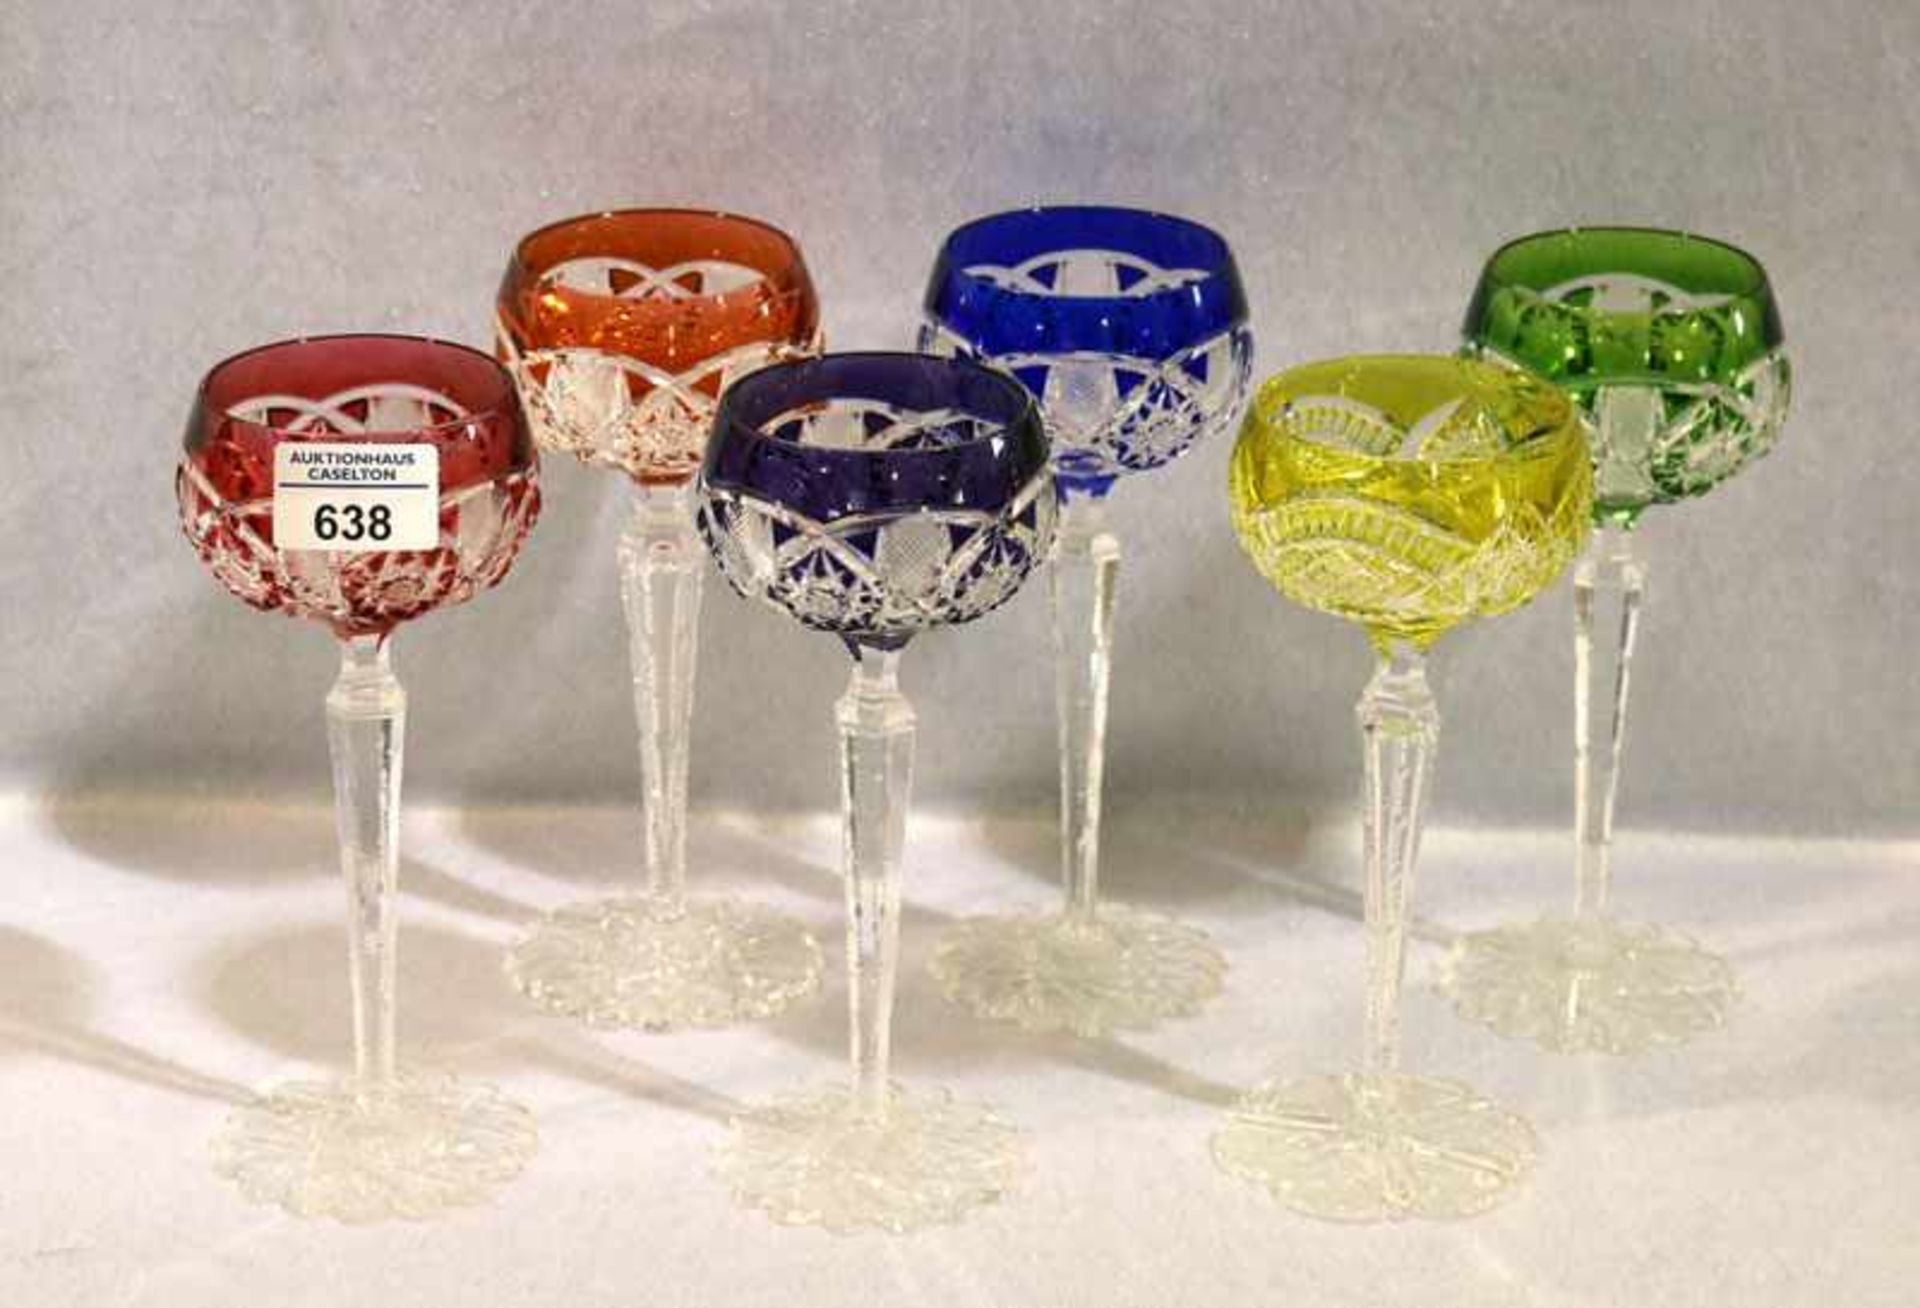 6 Römer Weingläser in verschiedenen Farben und Dekoren, H 20 cm, gut erhalten